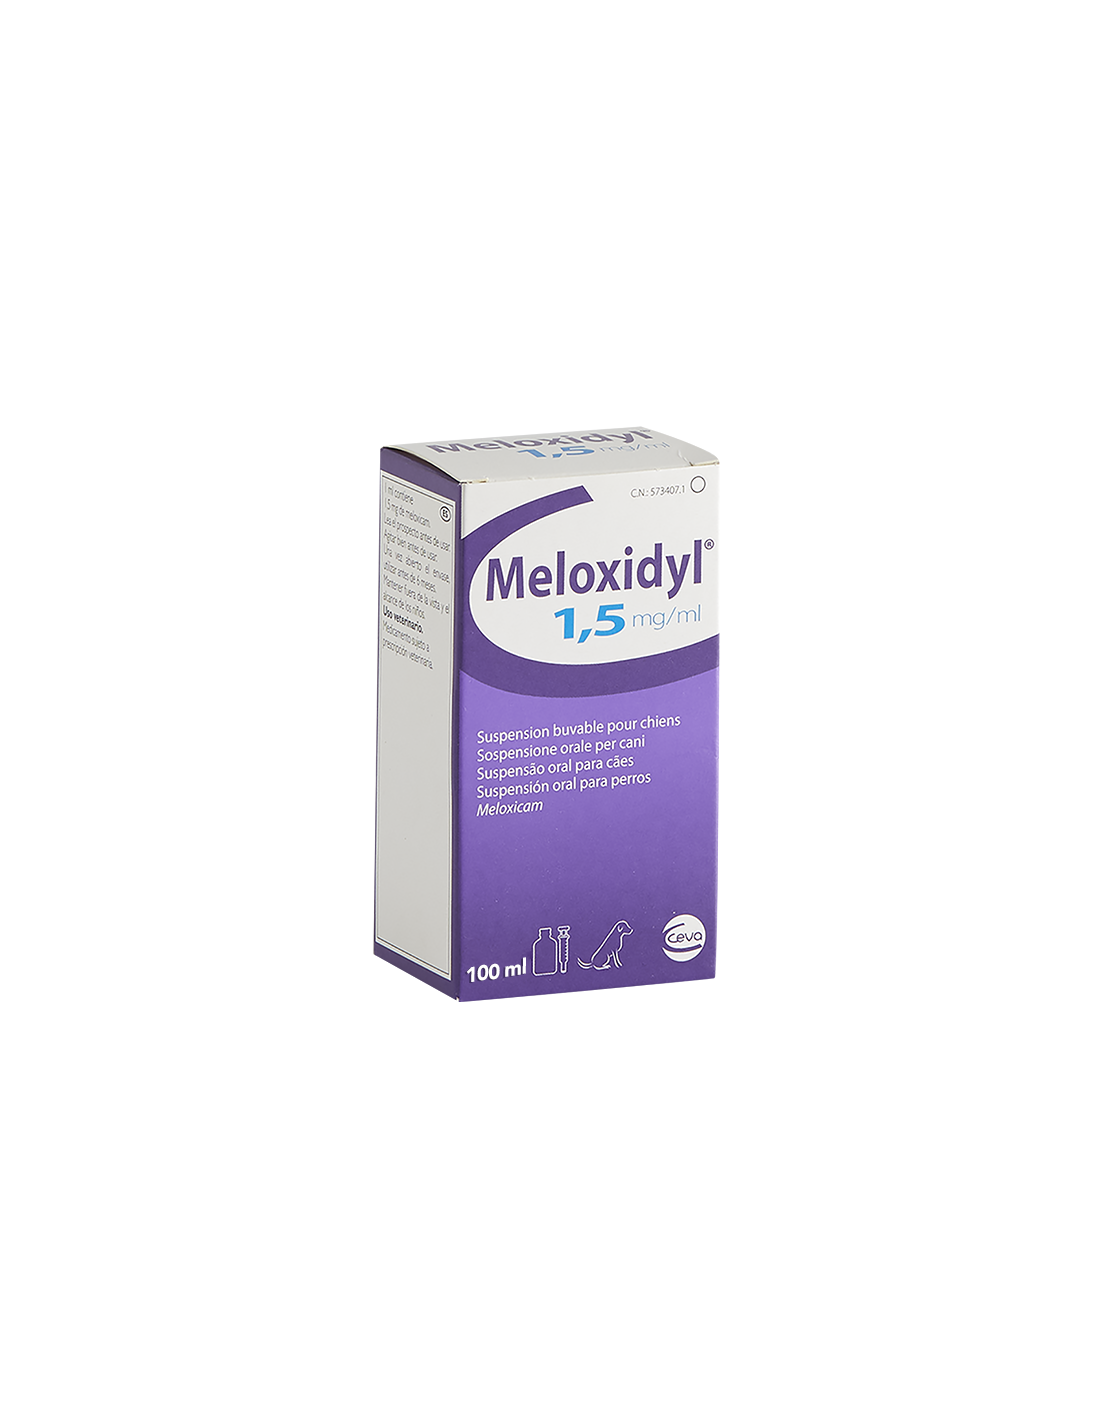 Mamá nombre de la marca edificio MELOXIDYL PERROS 100 ml 1,5 mg/ml SUSPENSIÓN ORAL de CEVA